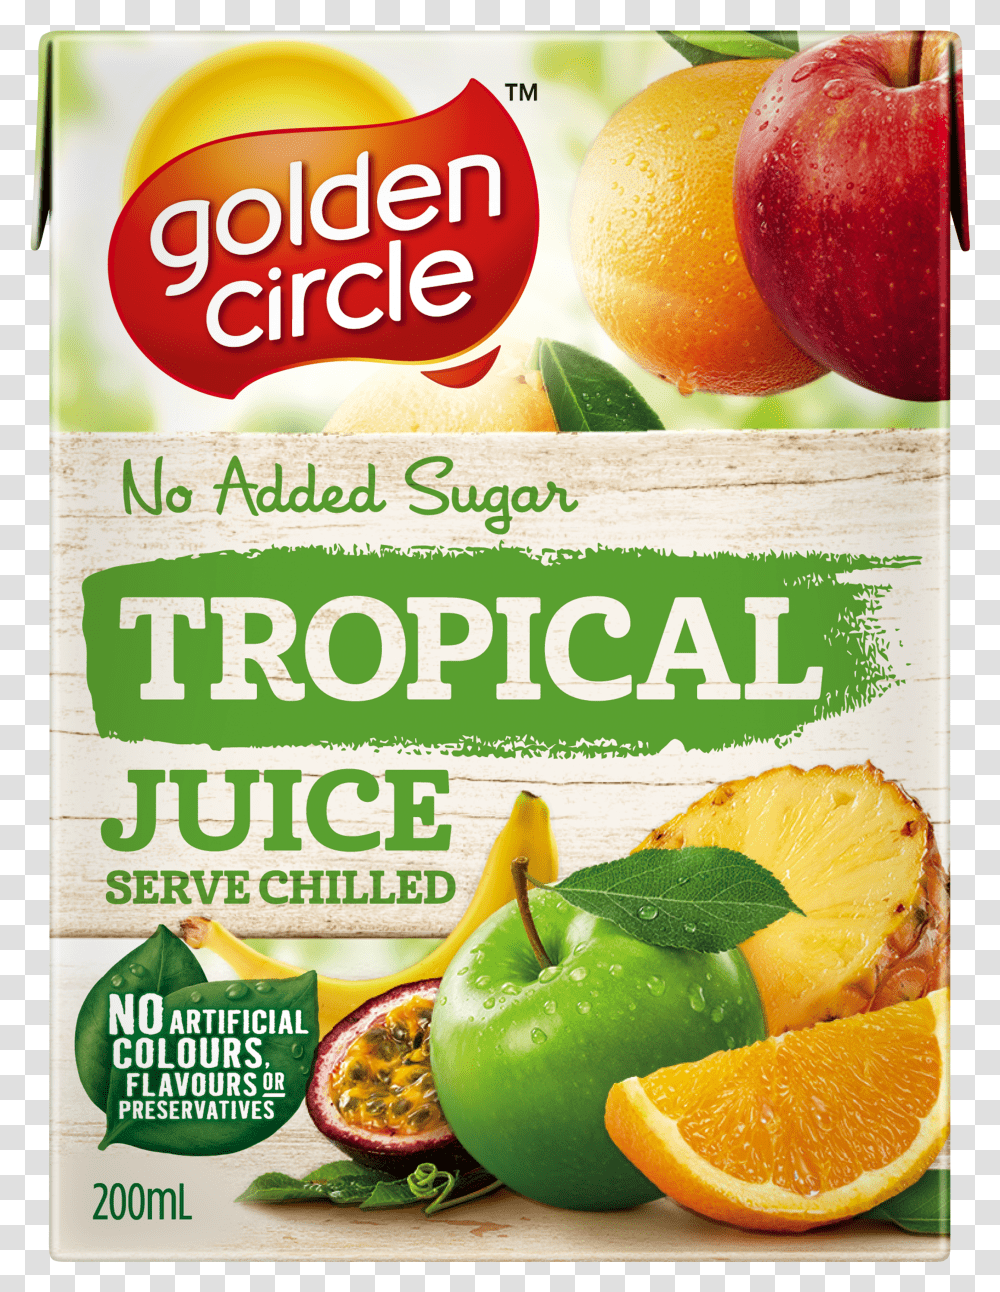 Fruit Juice Tropical Image Golden Circle Apple Mango Juice Transparent Png